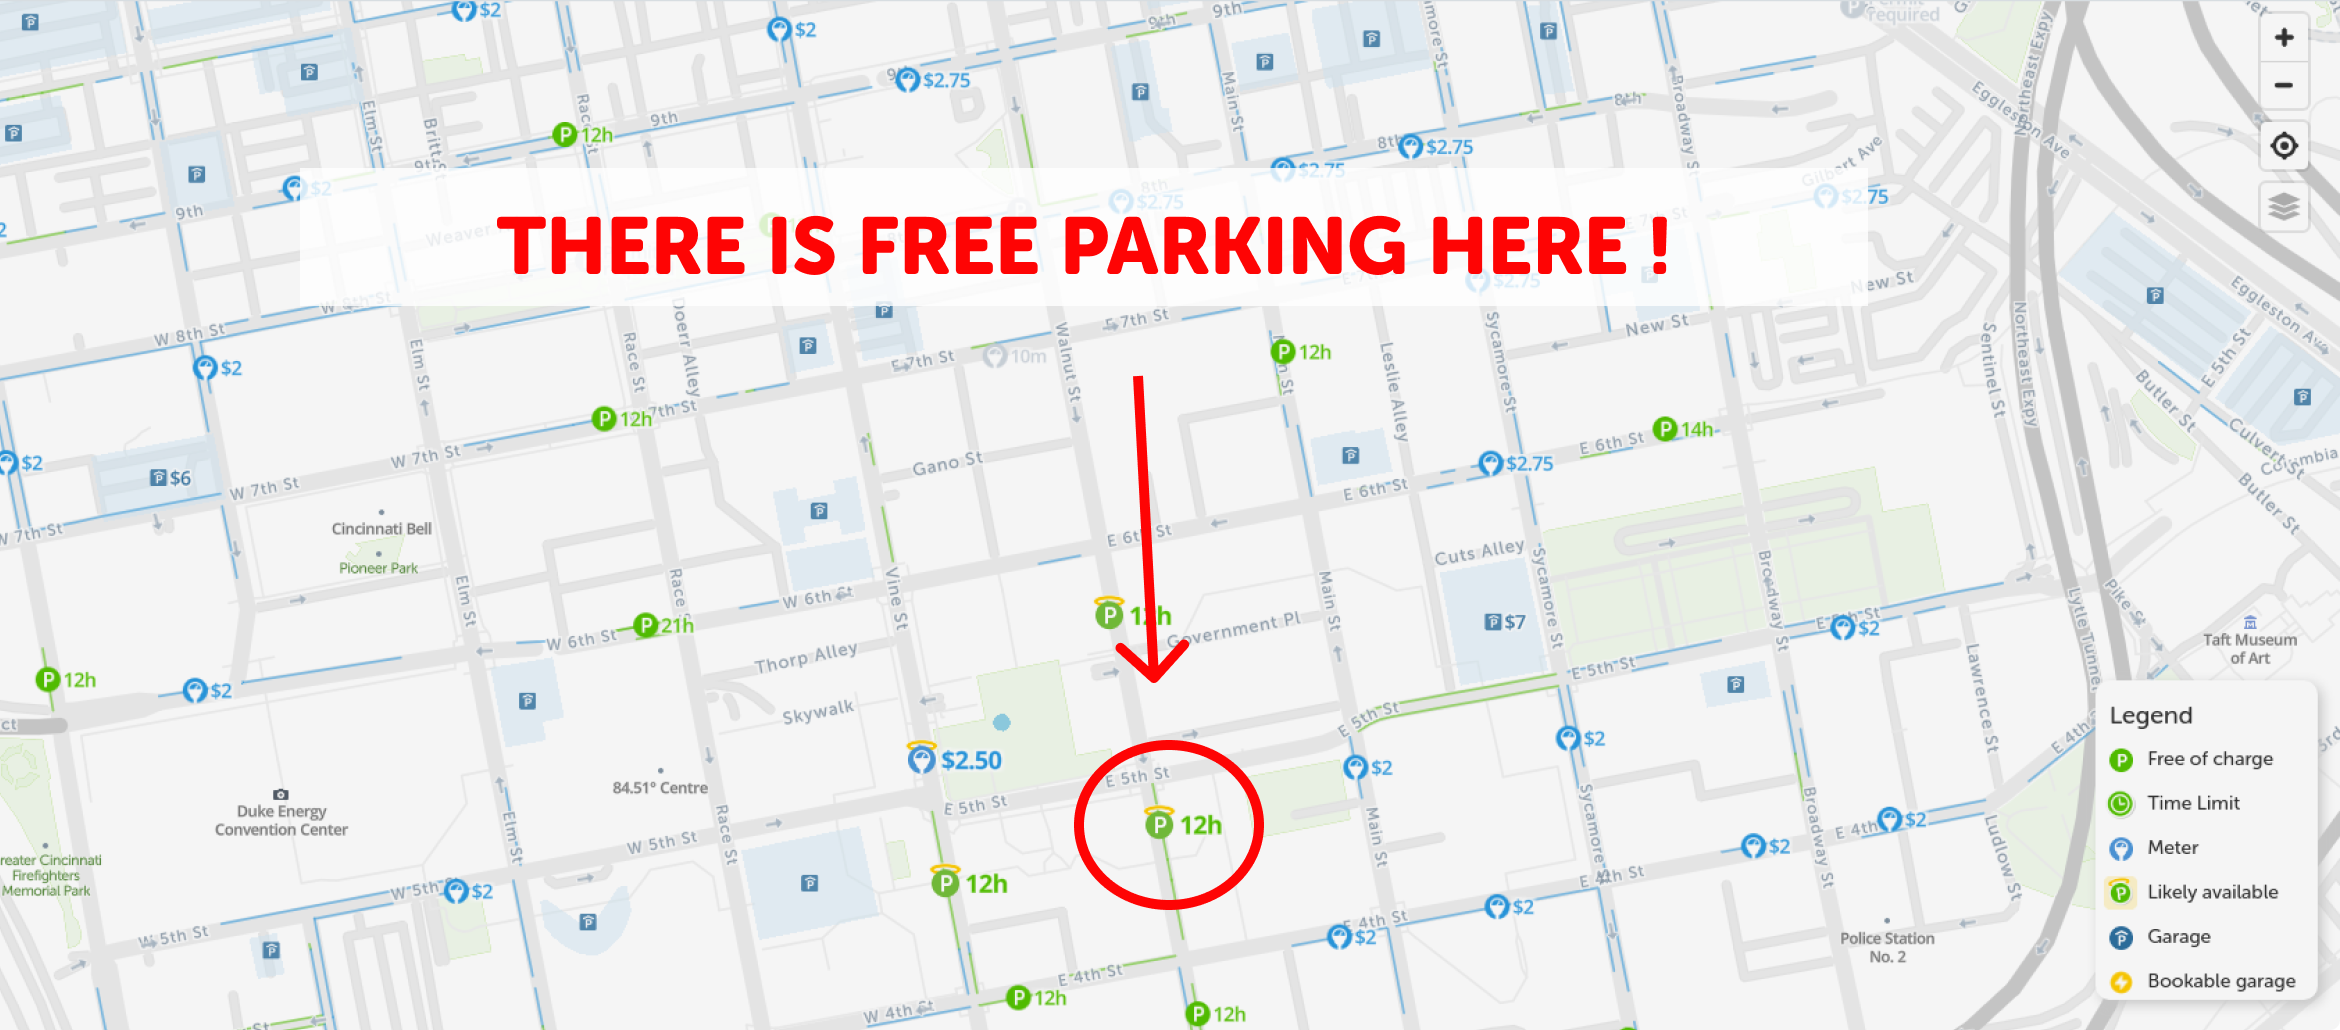 map of free parking in Cincinnati - SpotAngels